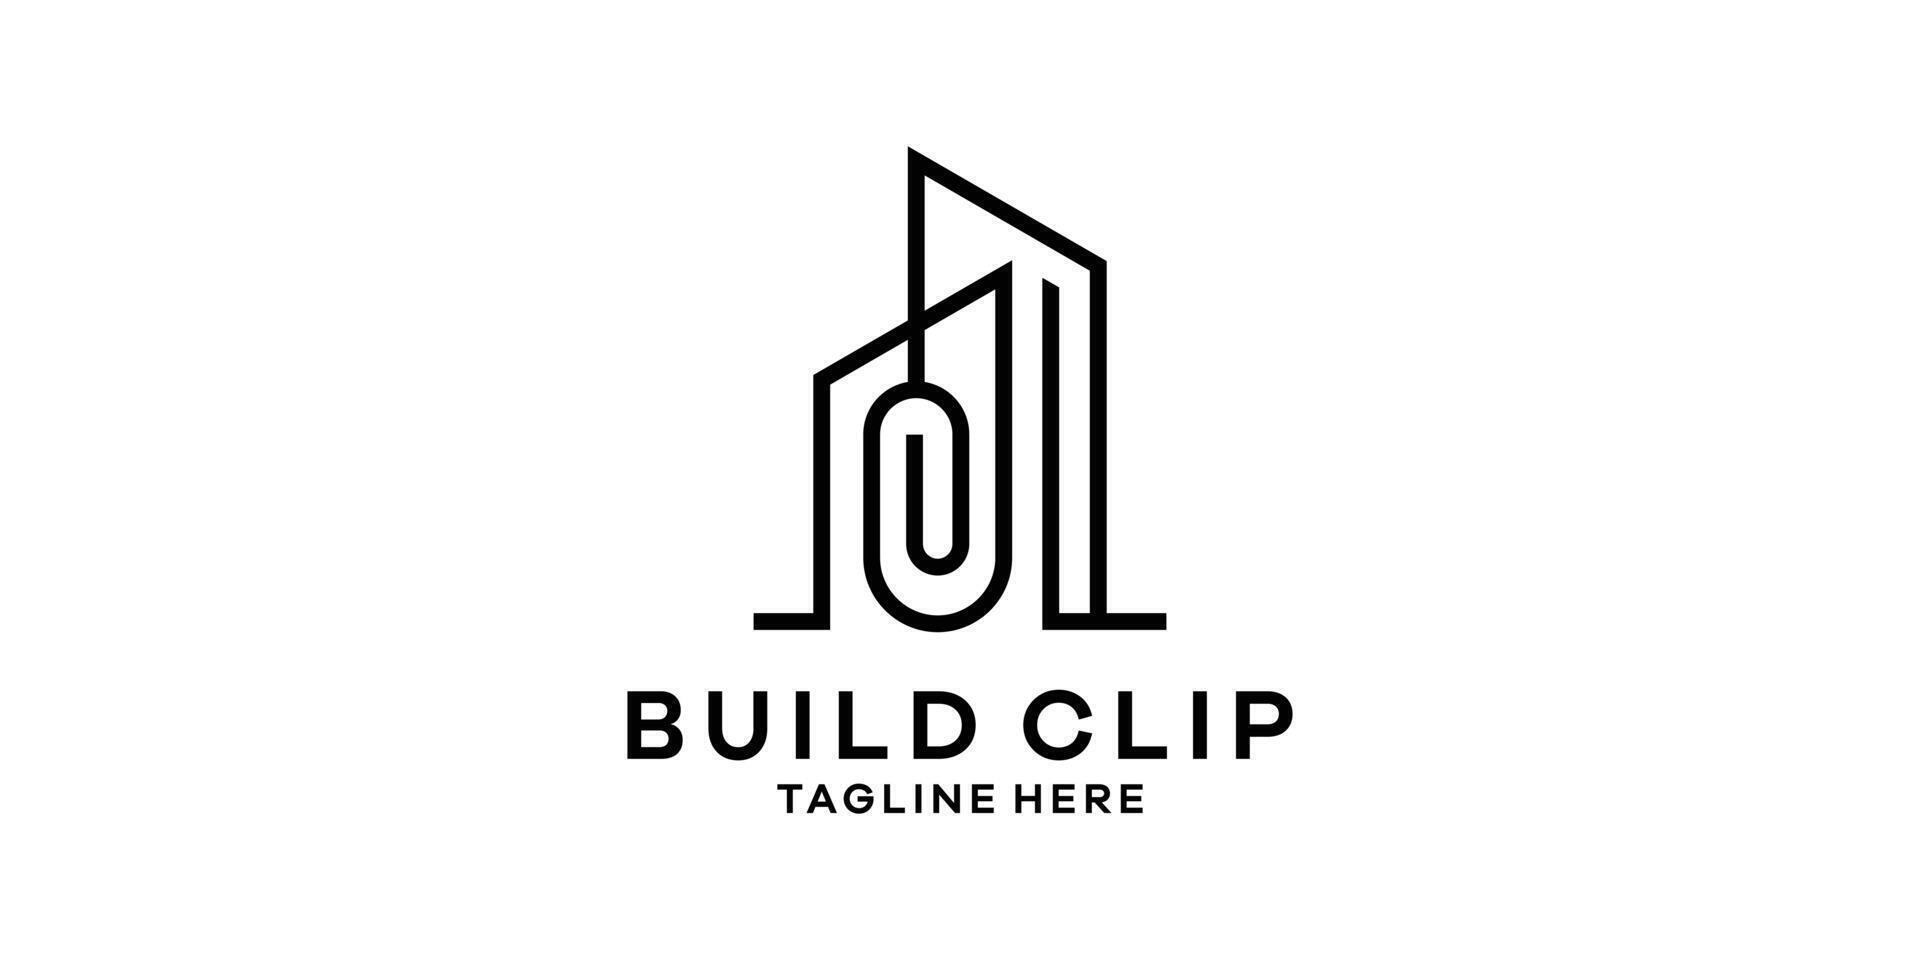 Logo Design kombinieren das gestalten von ein Gebäude mit ein Clip, Logo Design Vorlage, Symbol Idee. vektor